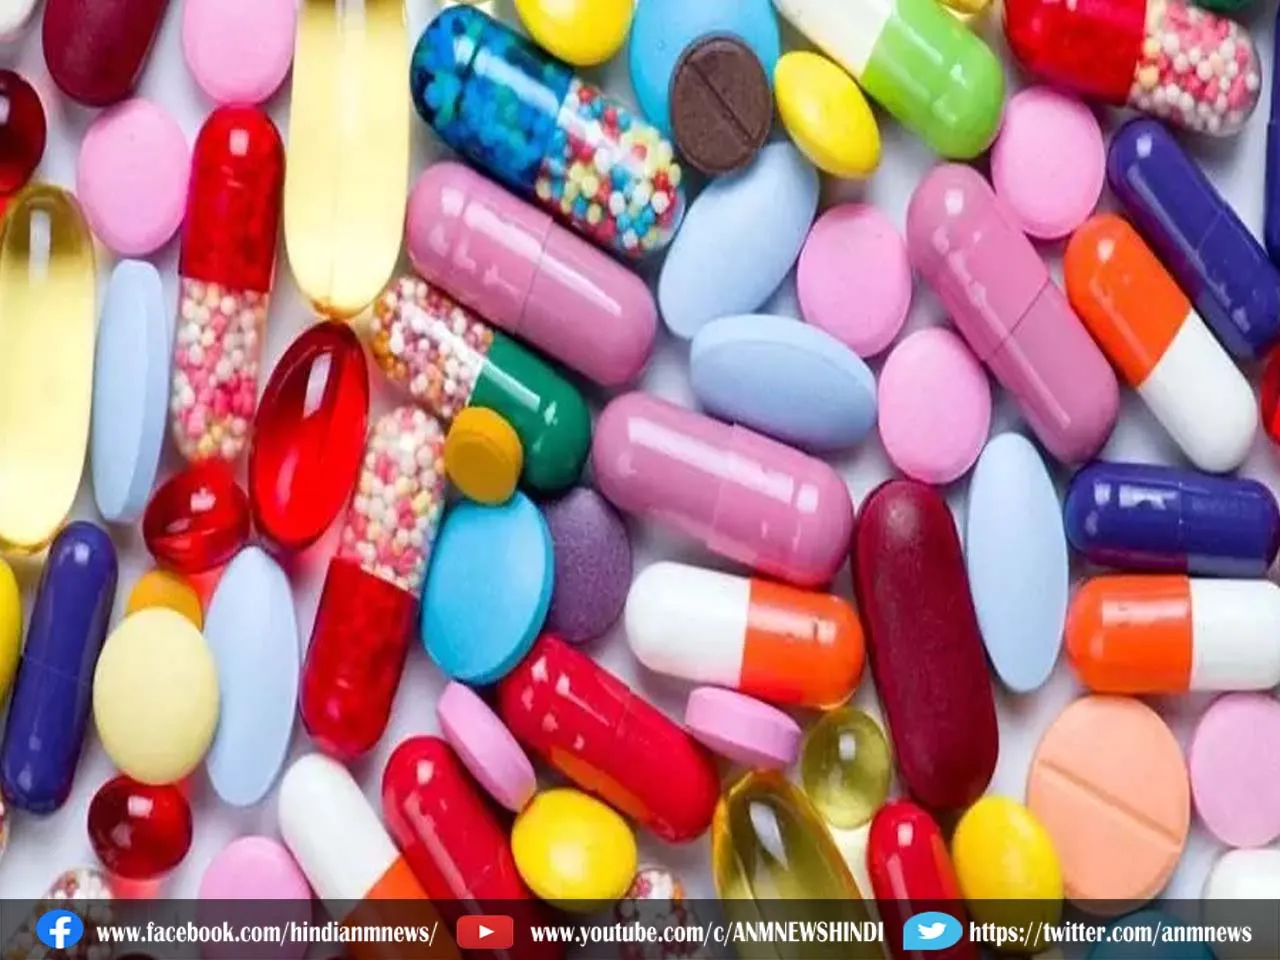 West Bengal: अब बिना डॉक्टर की पर्ची के नहीं बिकेंगी एंटीबायोटिक दवा